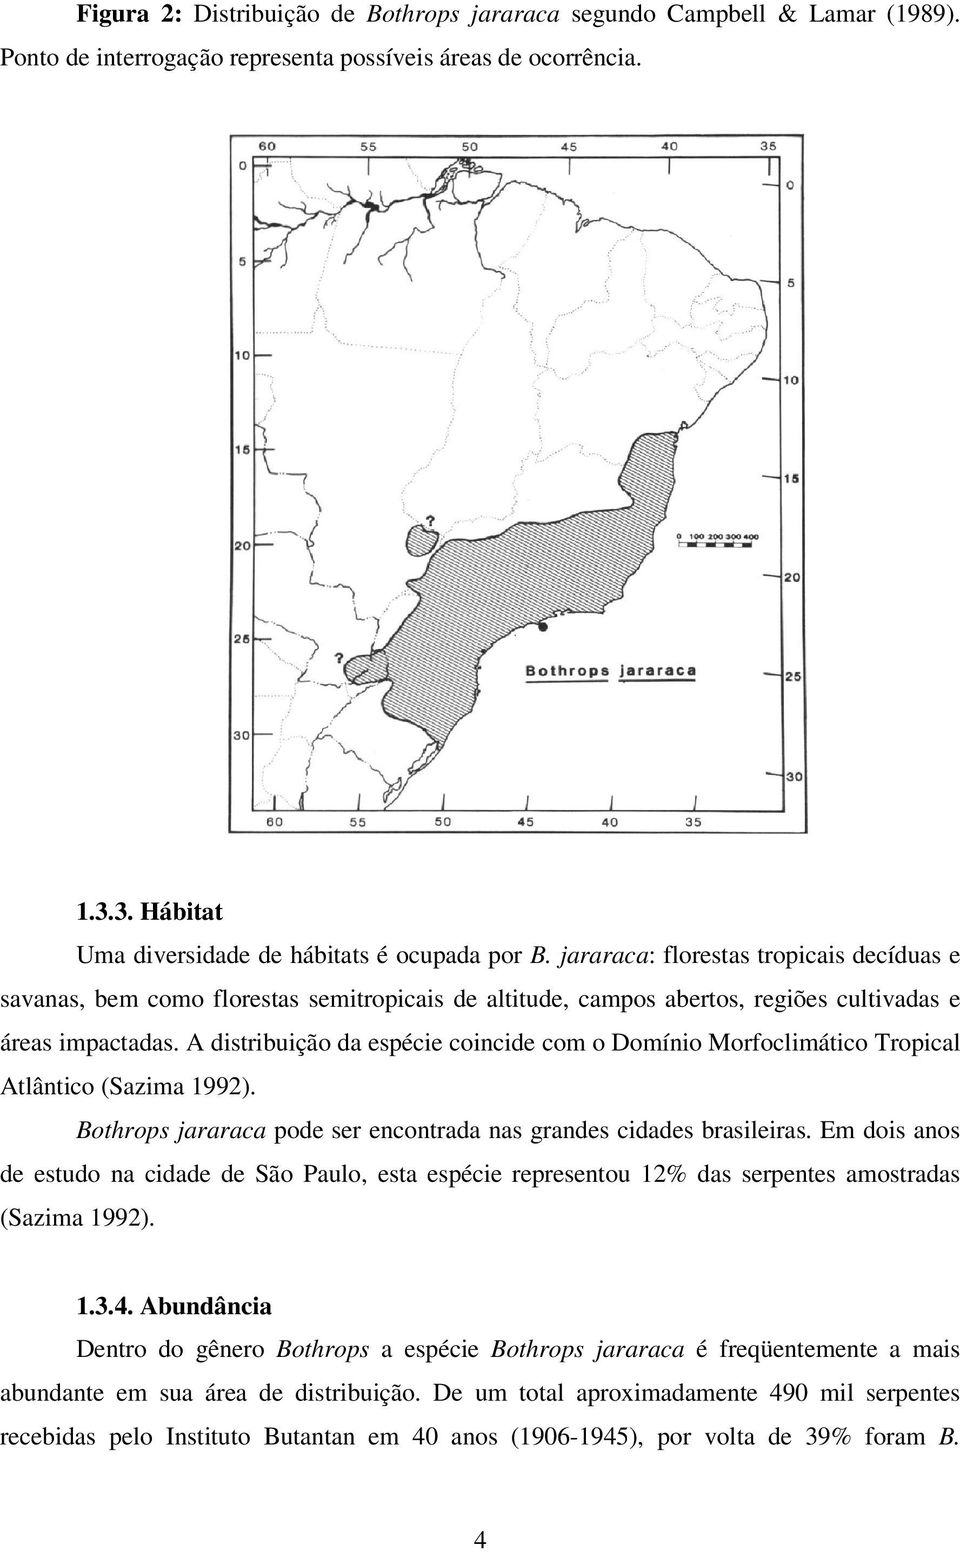 A distribuição da espécie coincide com o Domínio Morfoclimático Tropical Atlântico (Sazima 1). Bothrops jararaca pode ser encontrada nas grandes cidades brasileiras.